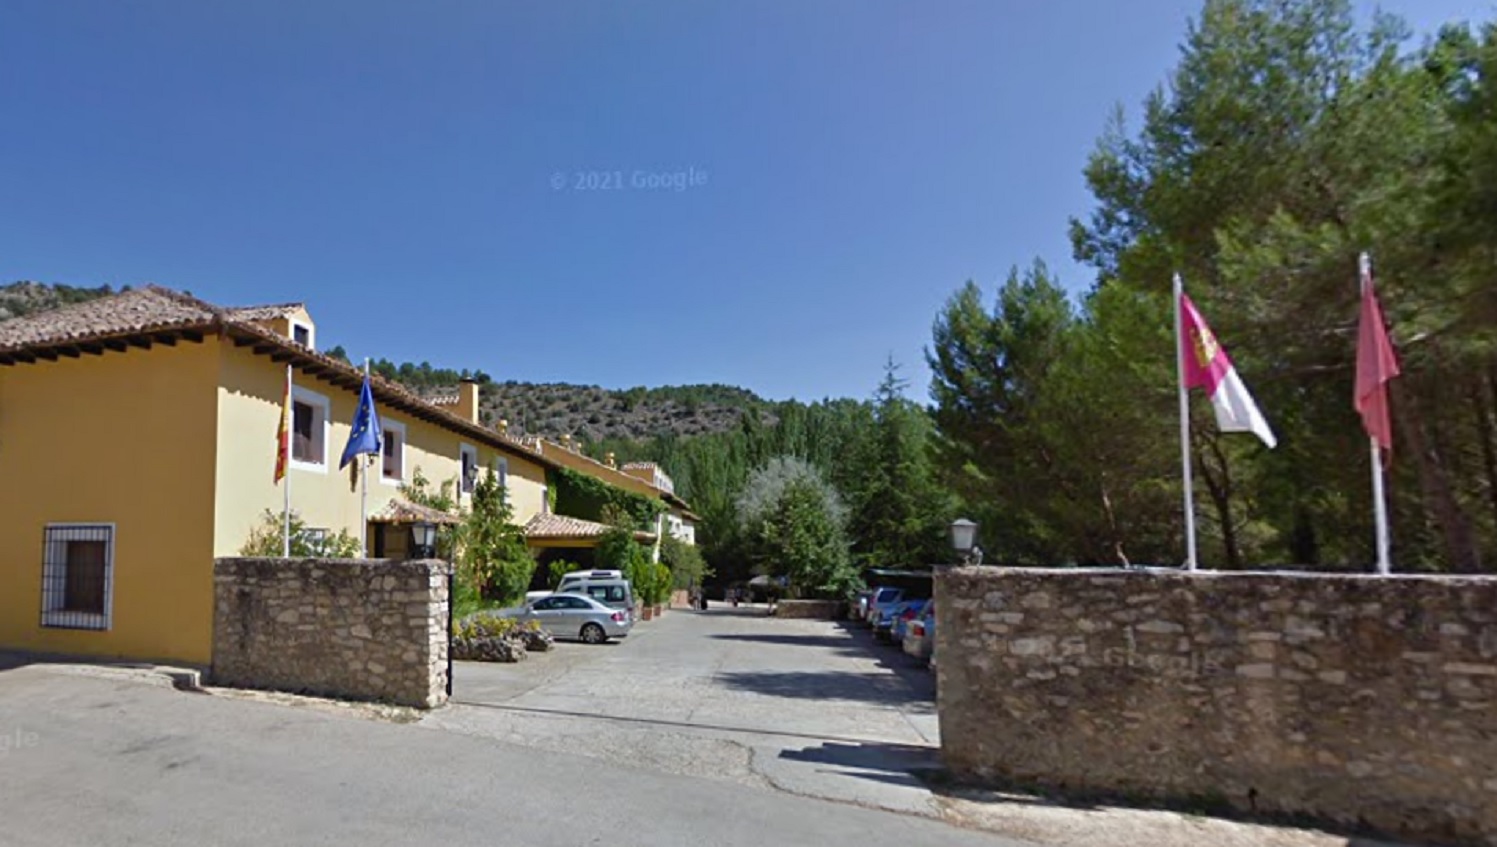 Entrada al Hotel Cueva del Fraile, en la carretera de Buenache, en Cuenca.